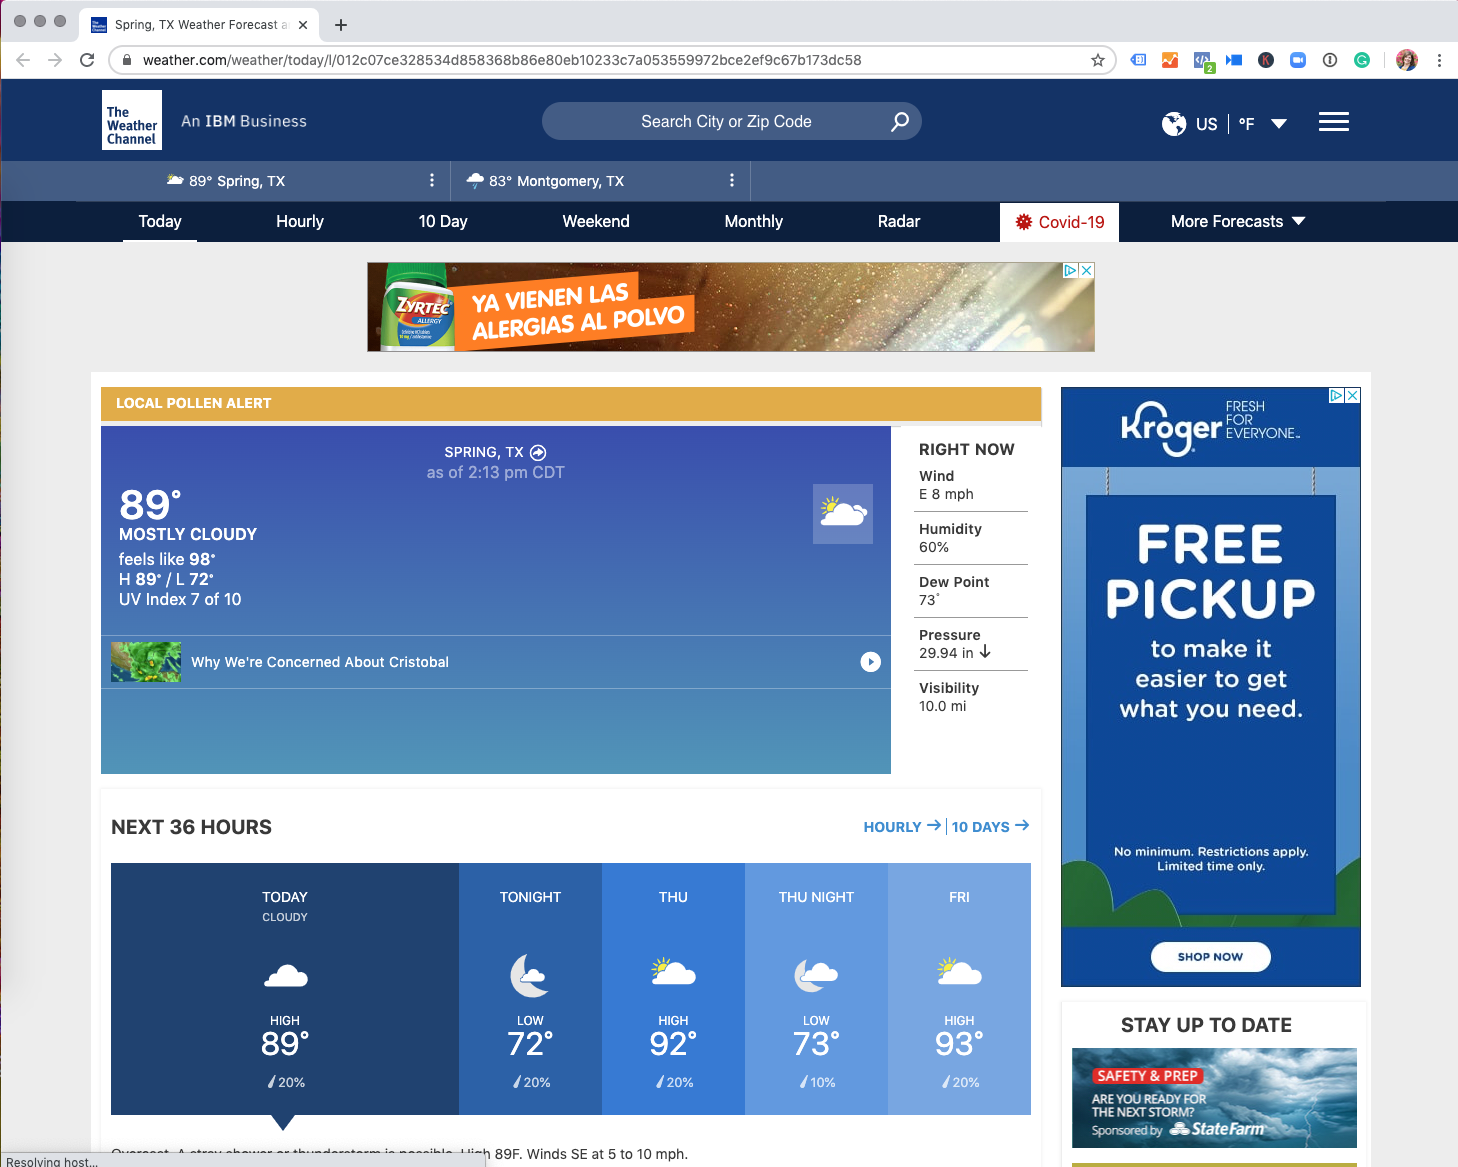 responsive website design - weather example